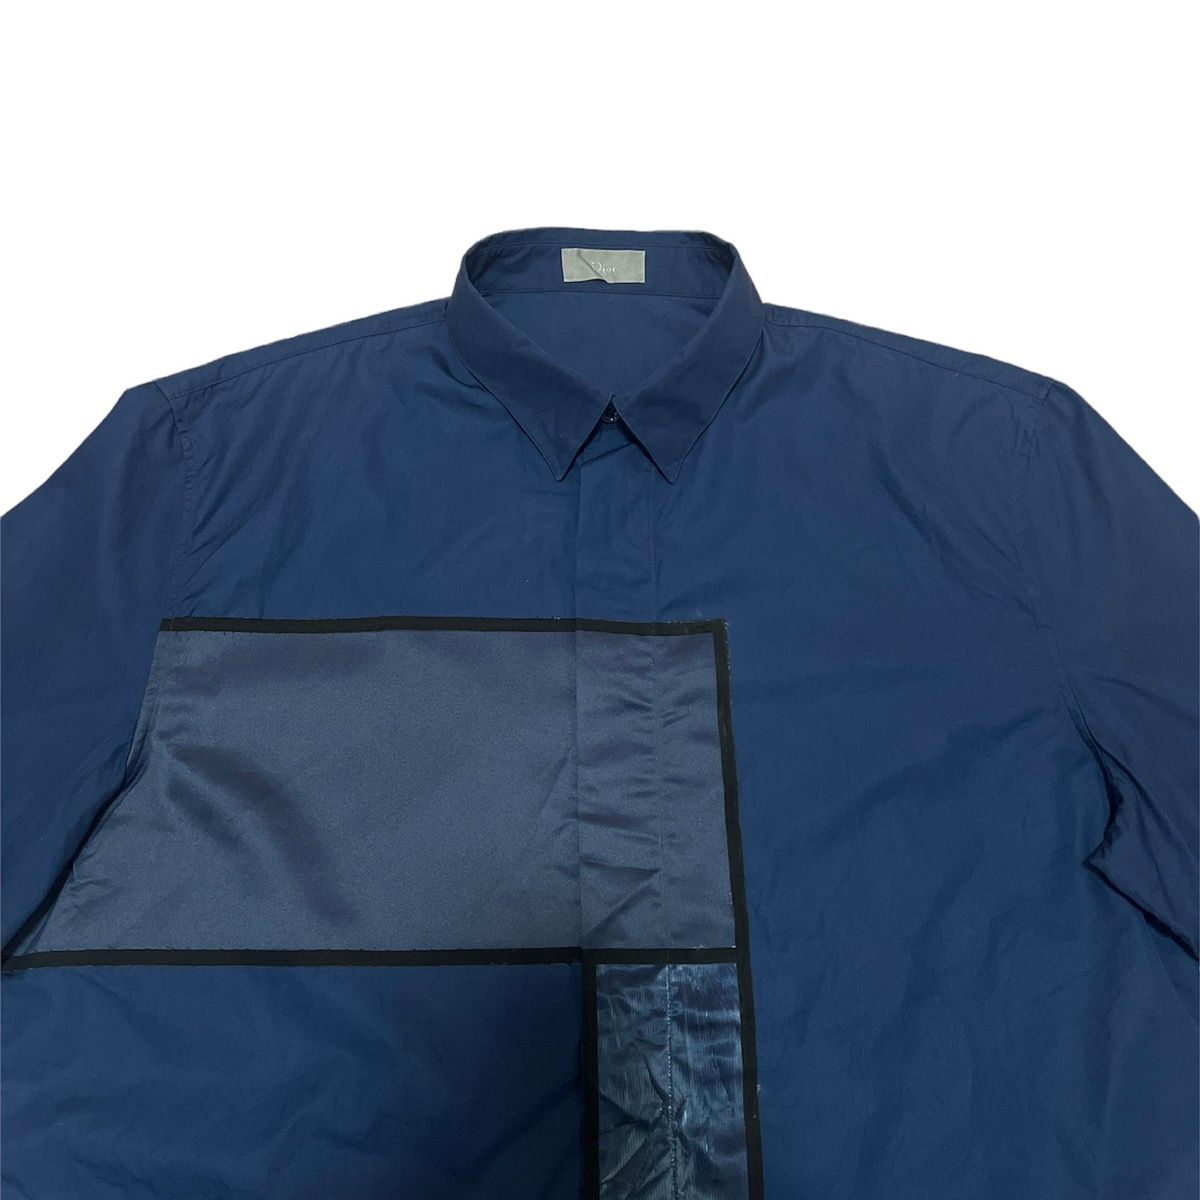 SS14 Dior Homme Kris Van Assche Haute Patchwork Shirt - 6